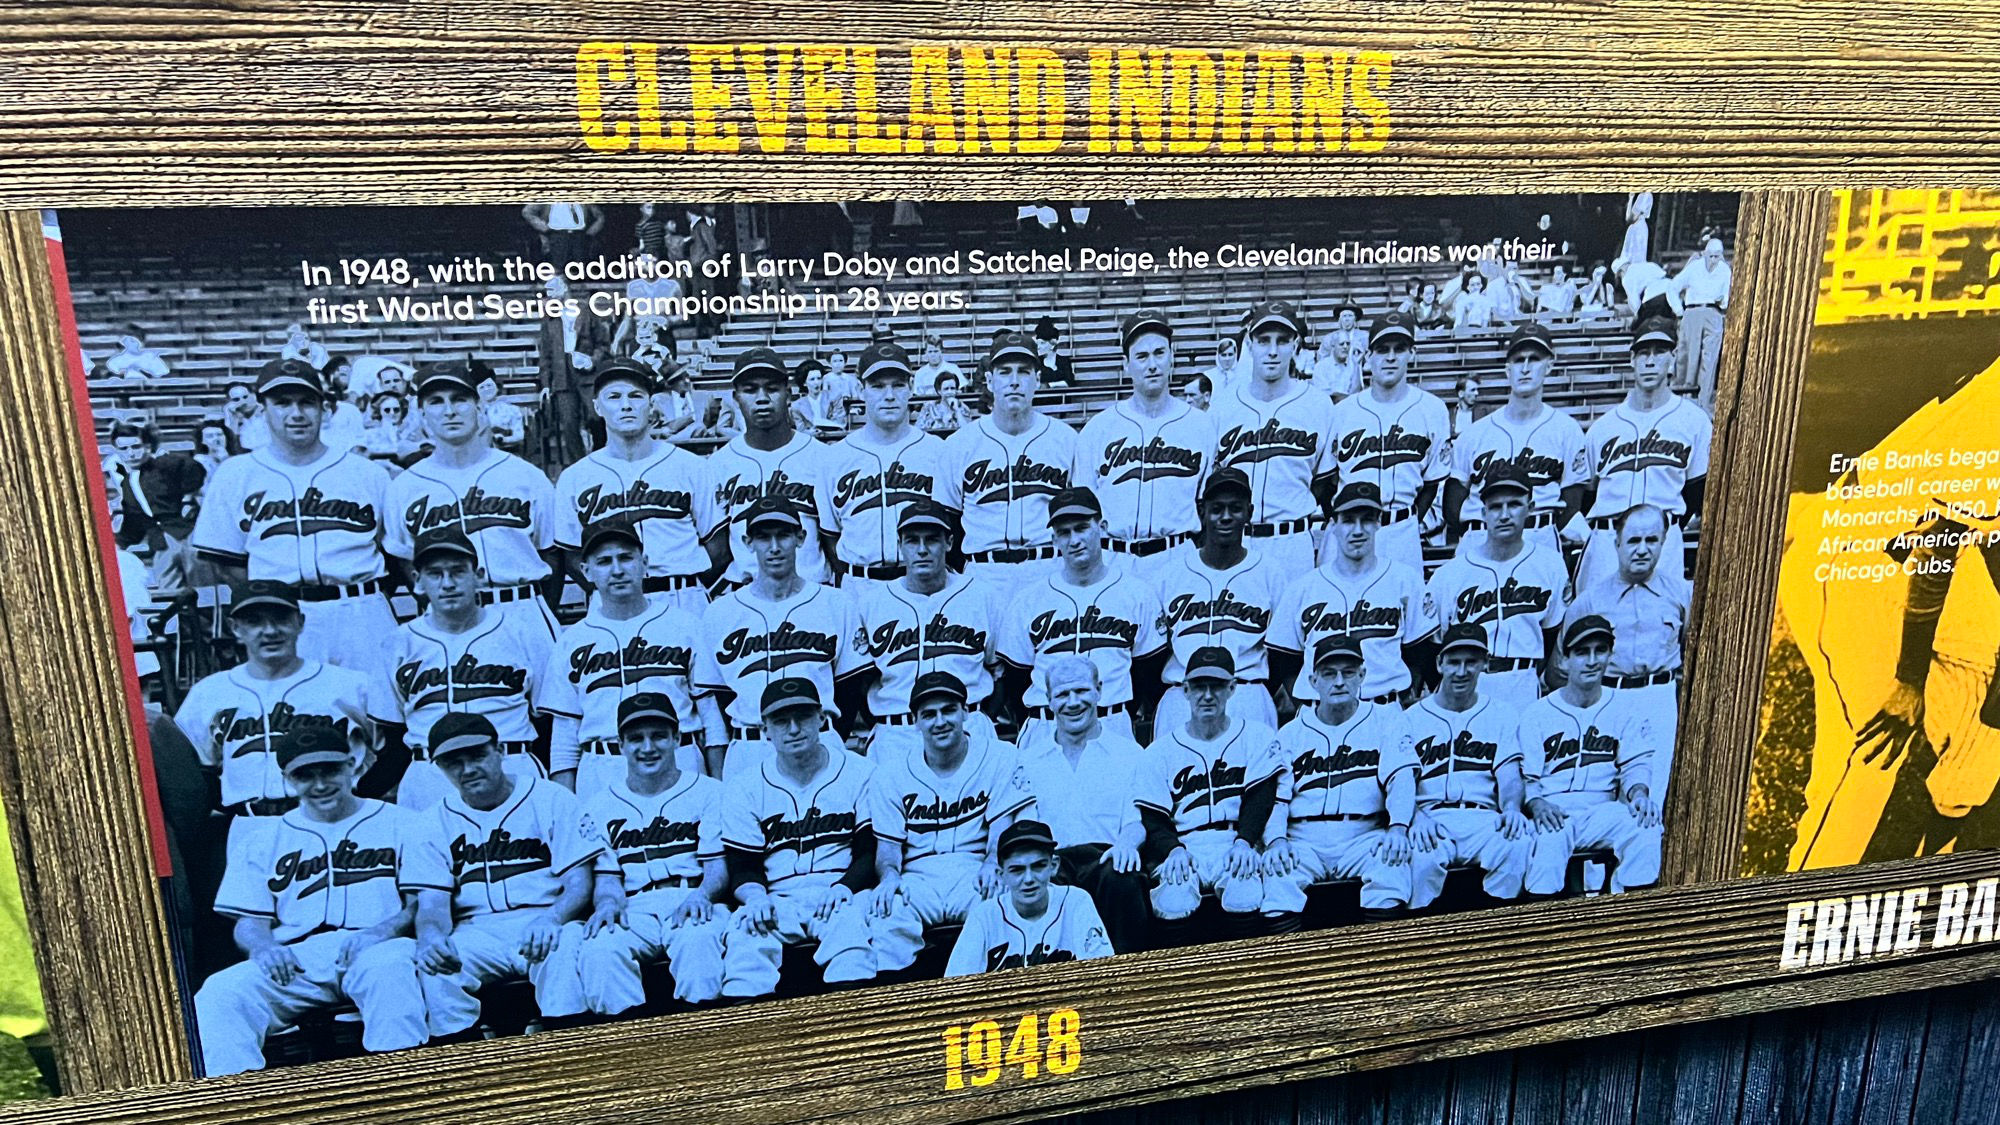 Negro Leagues Cleveland Indians